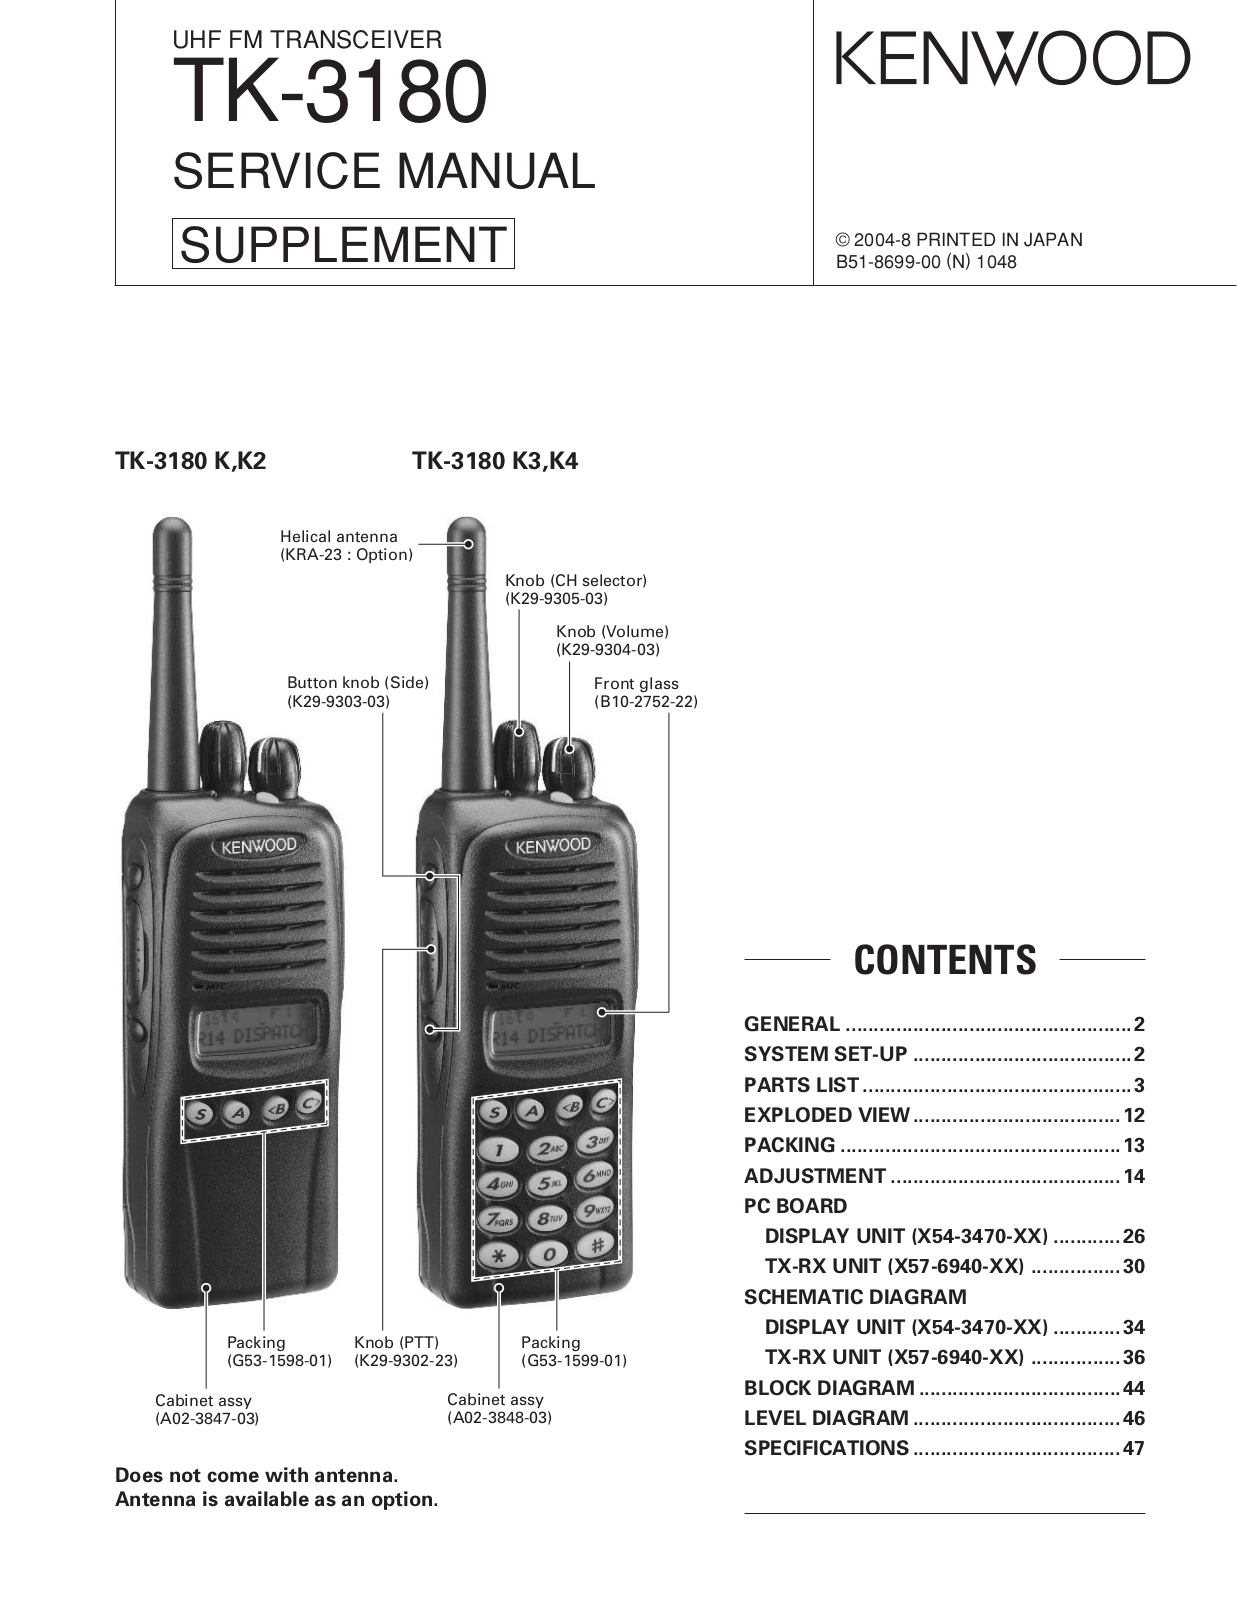 Kenwood TK-3180 User Manual